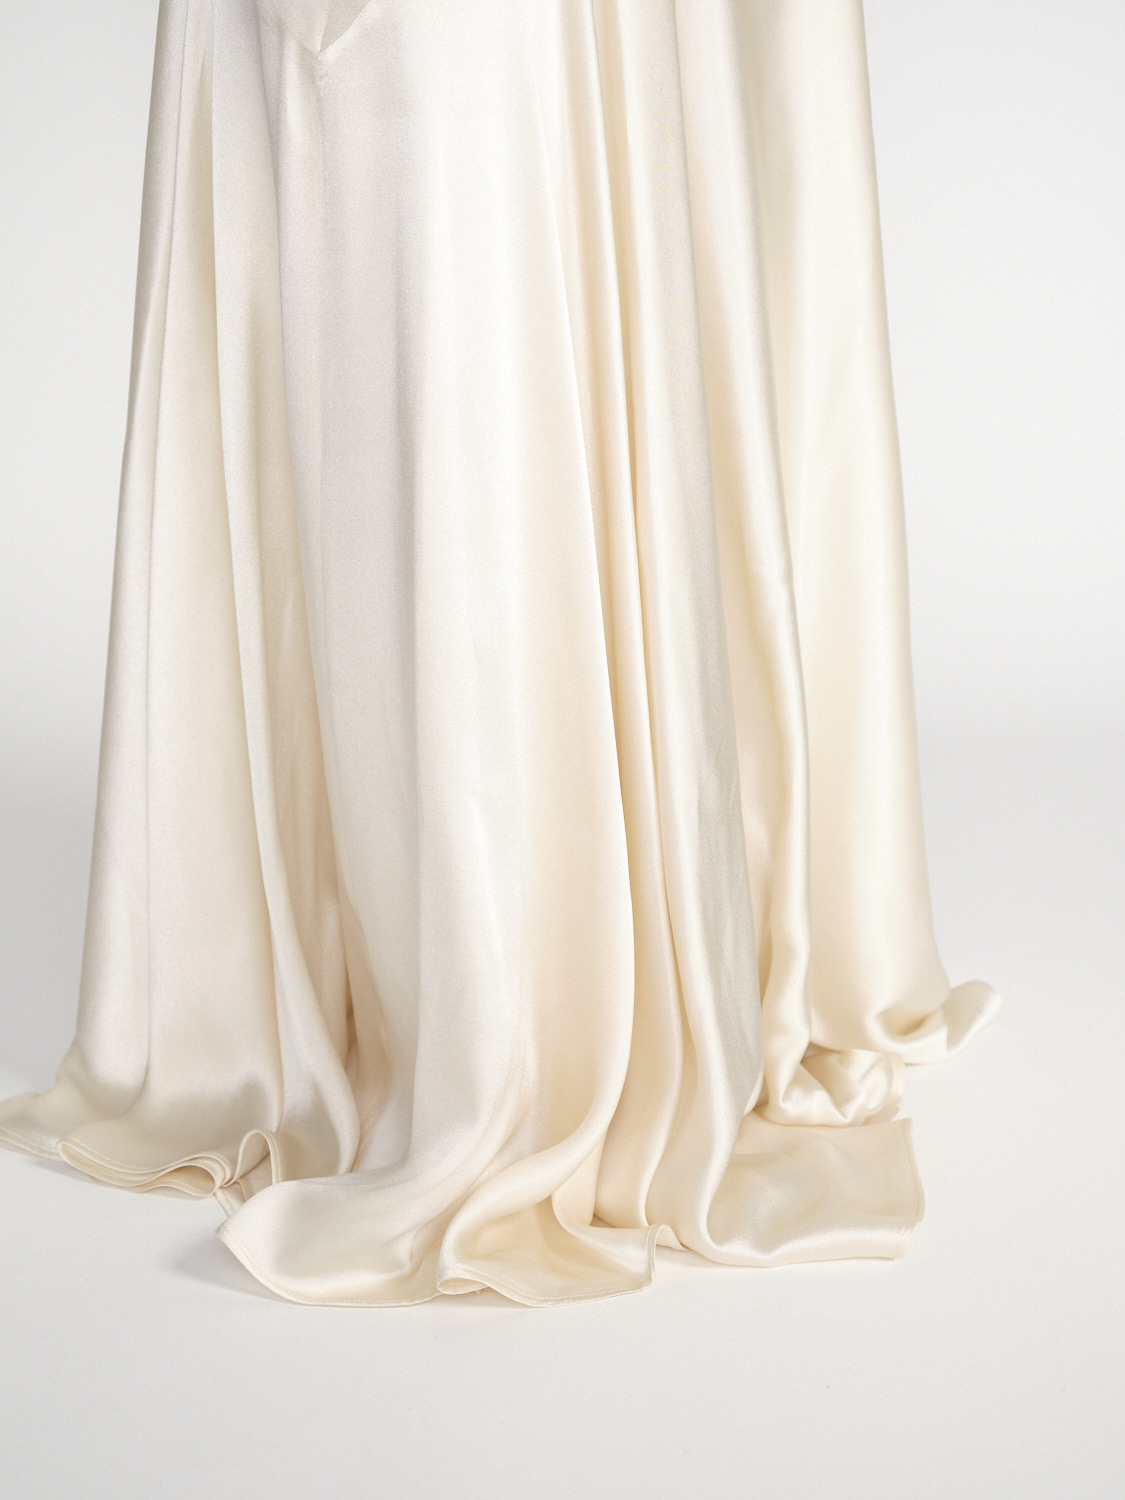 Nina Ricci Bias cut maxi skirt made of silk blend  creme 36